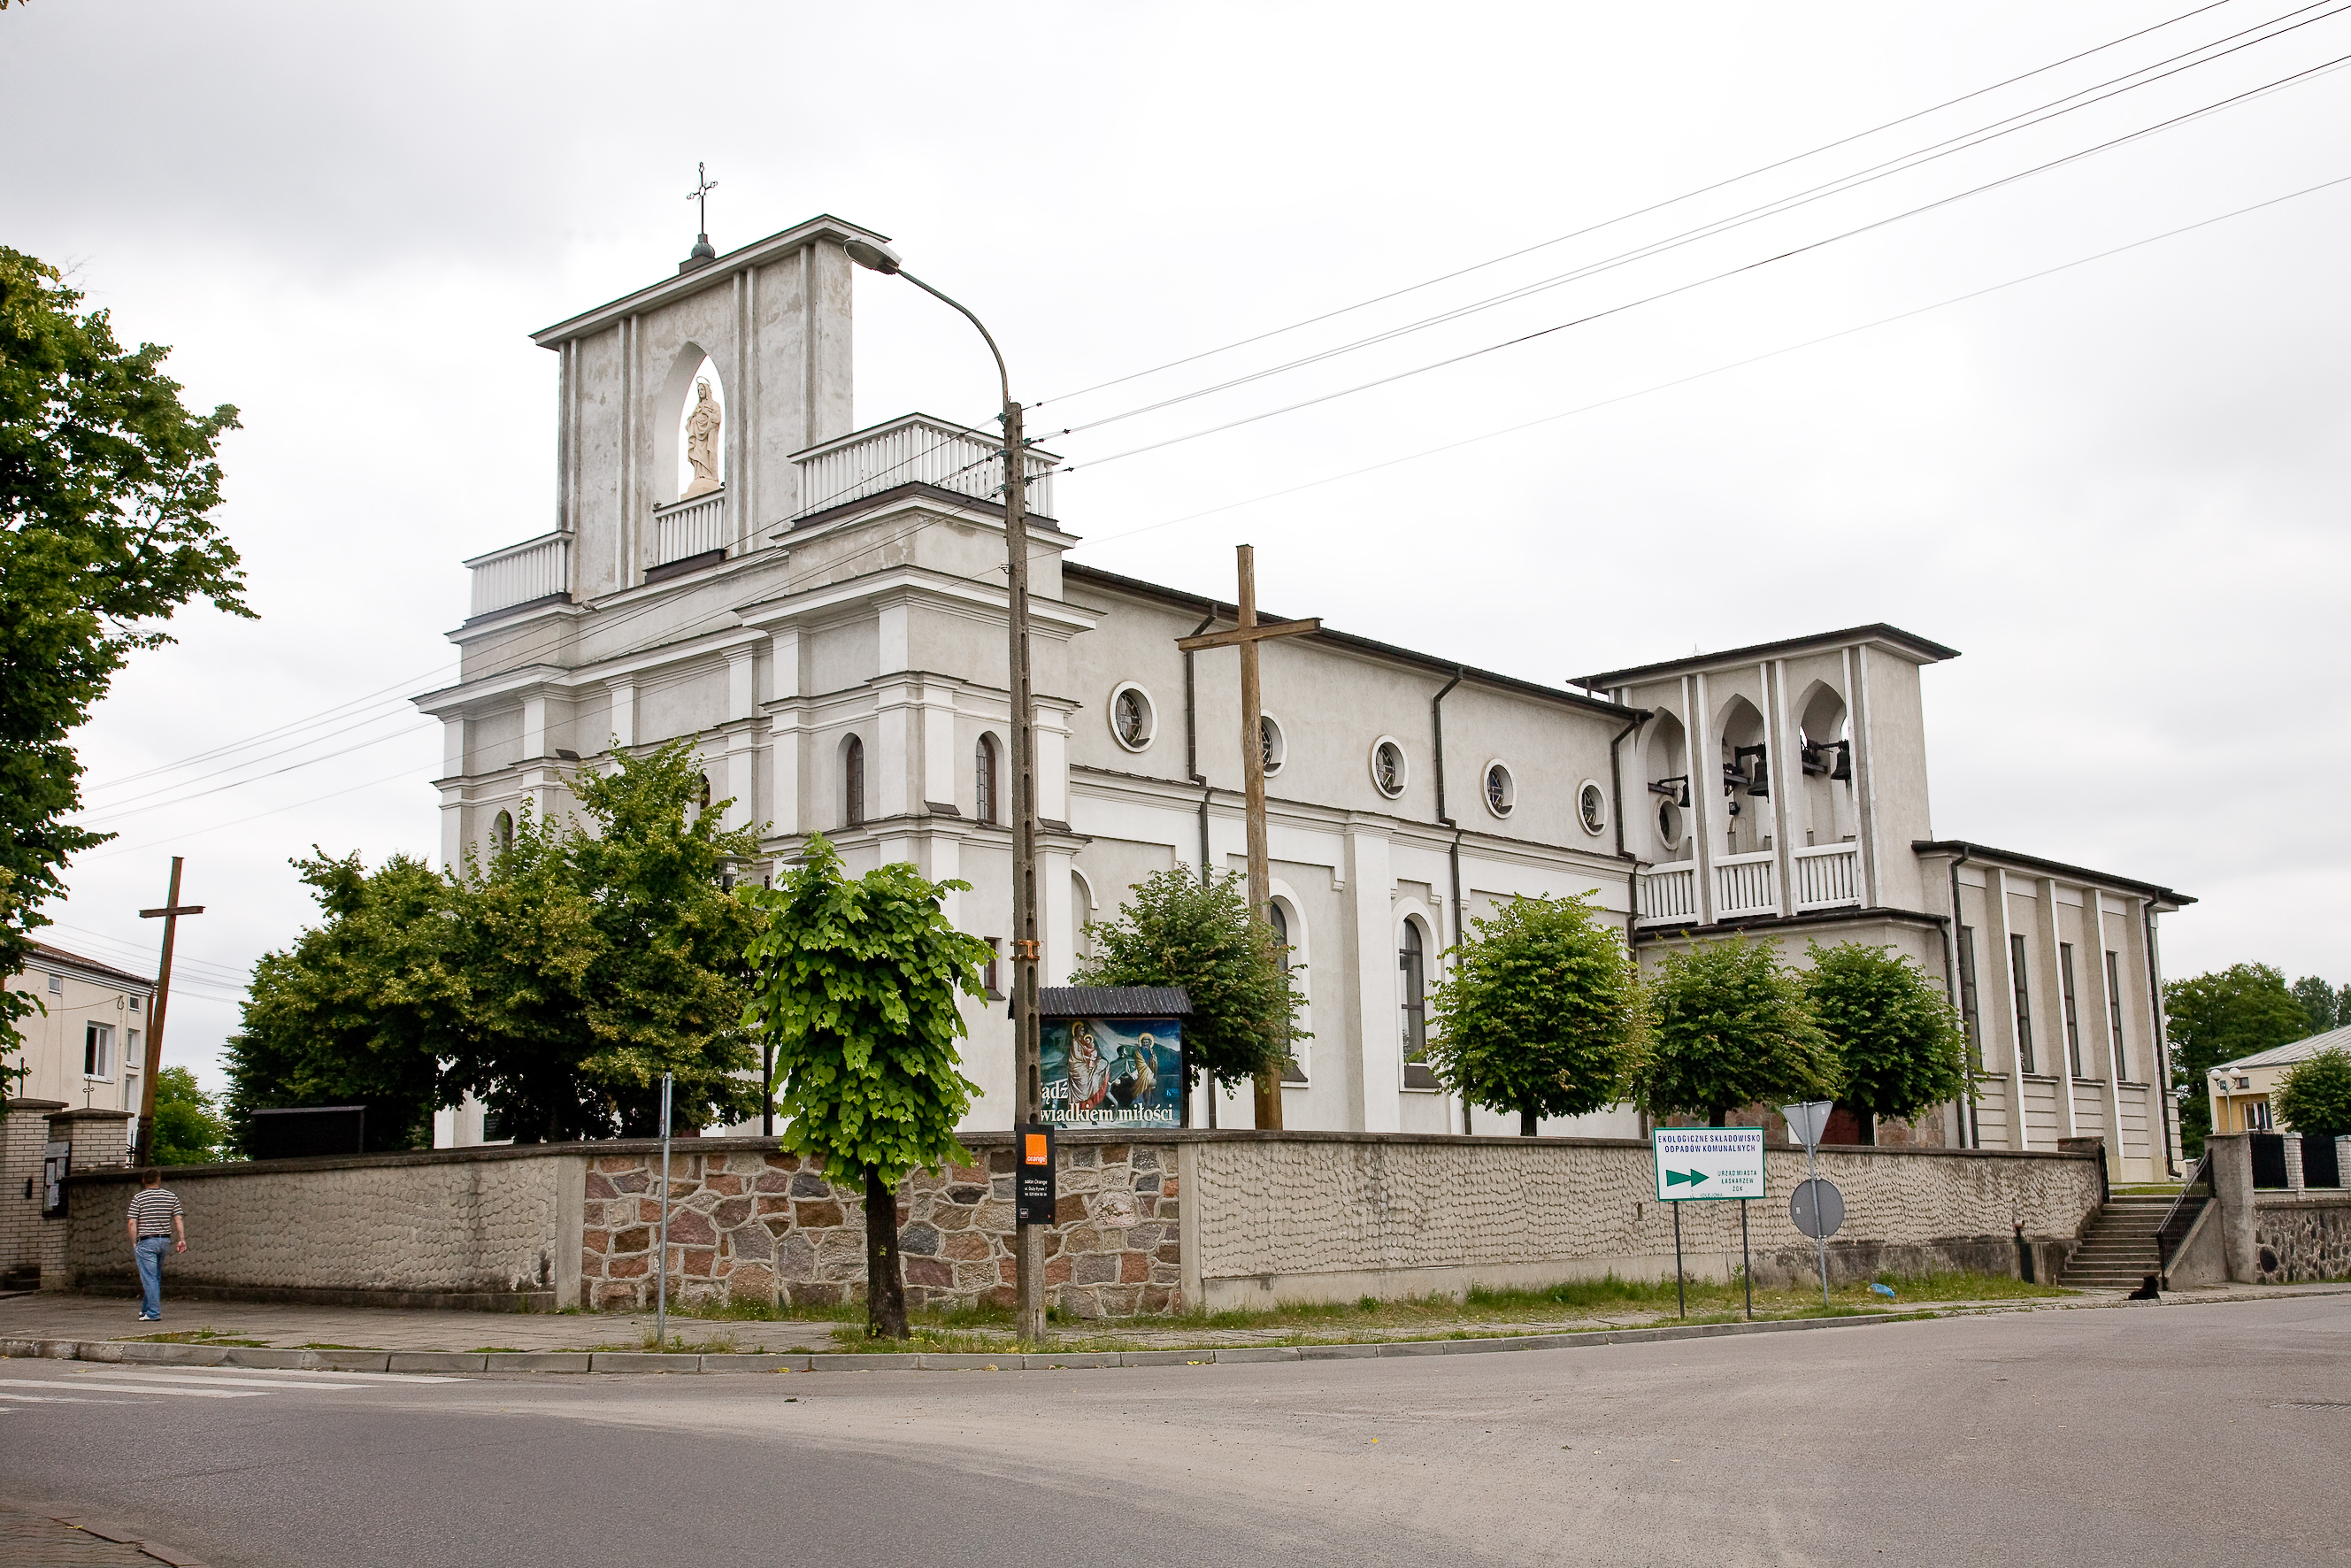 Kościół parafialny p.w. Podwyższenia Krzyża Świętego w Łaskarzewie, styl eklektyczny.